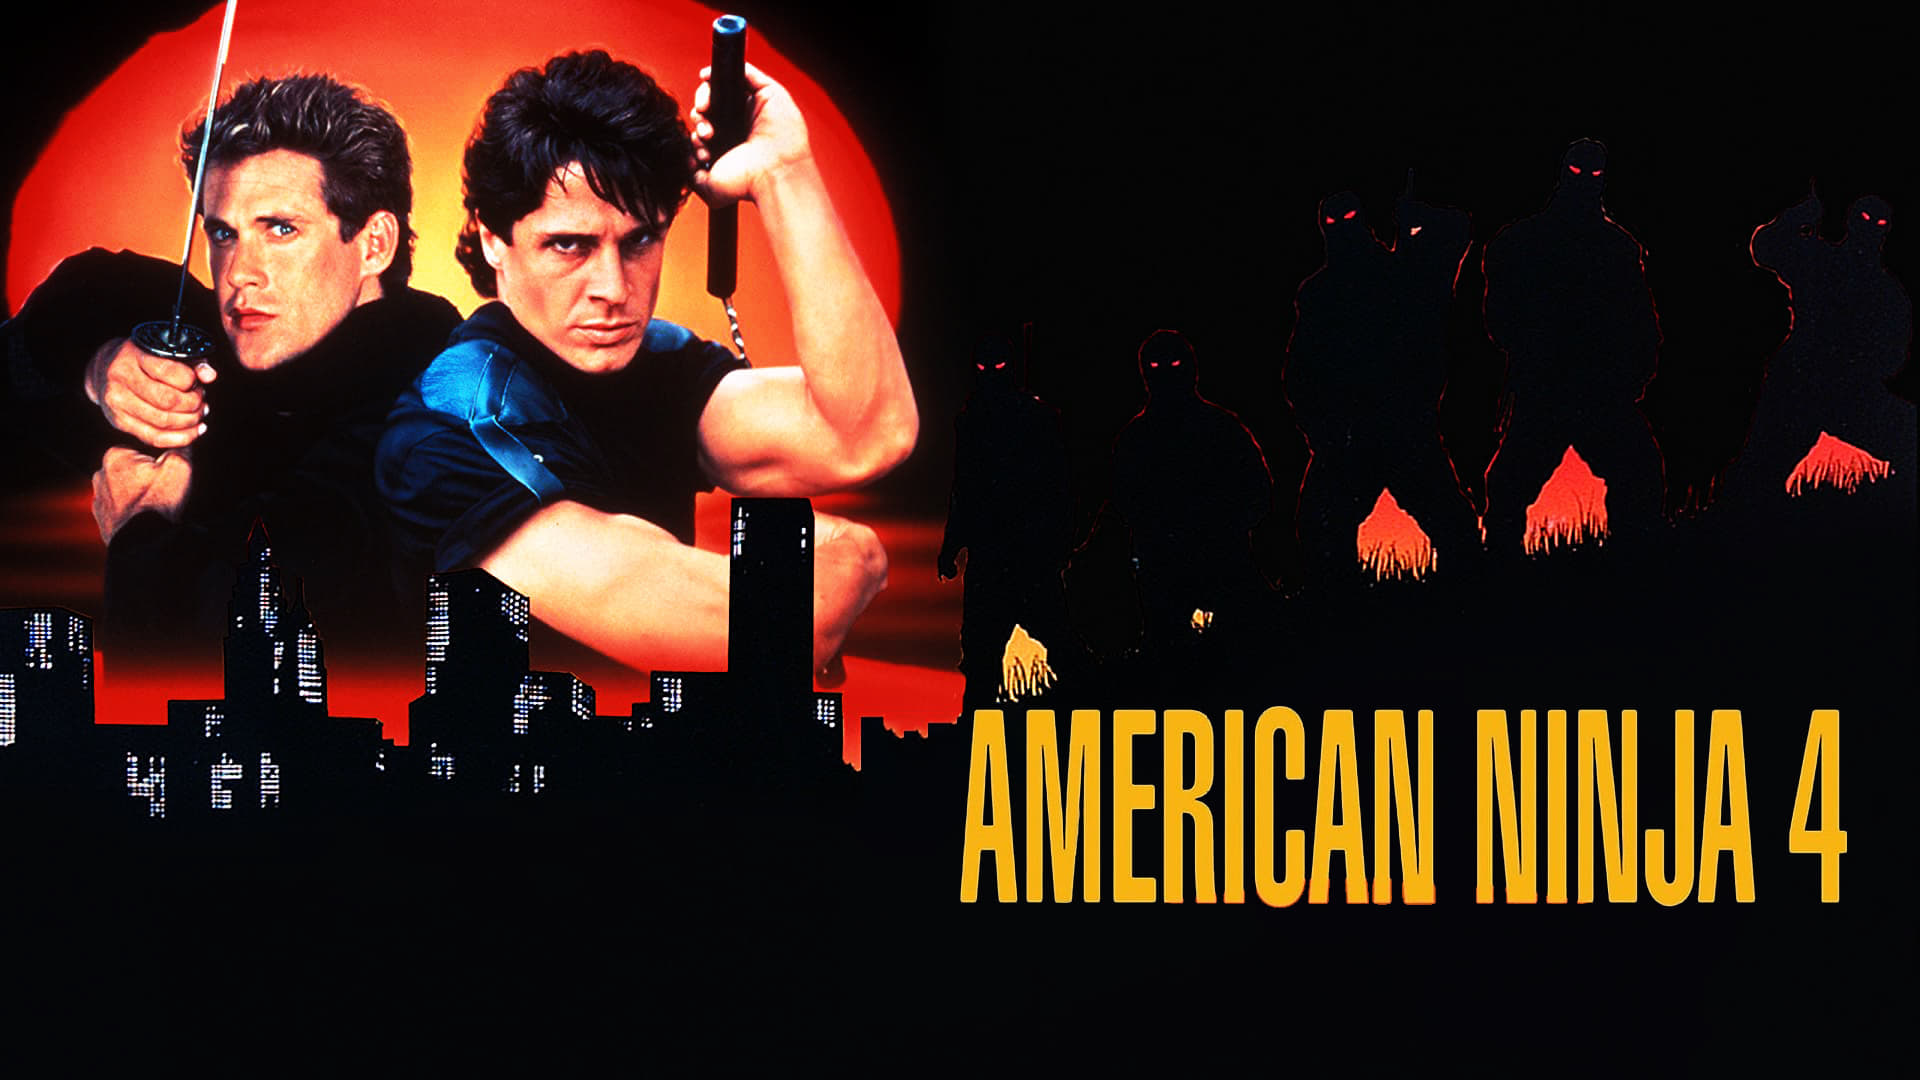 American Ninja 4 The Annihilation (1990) อเมริกันนินจา 4 นินจาล้างนินจา